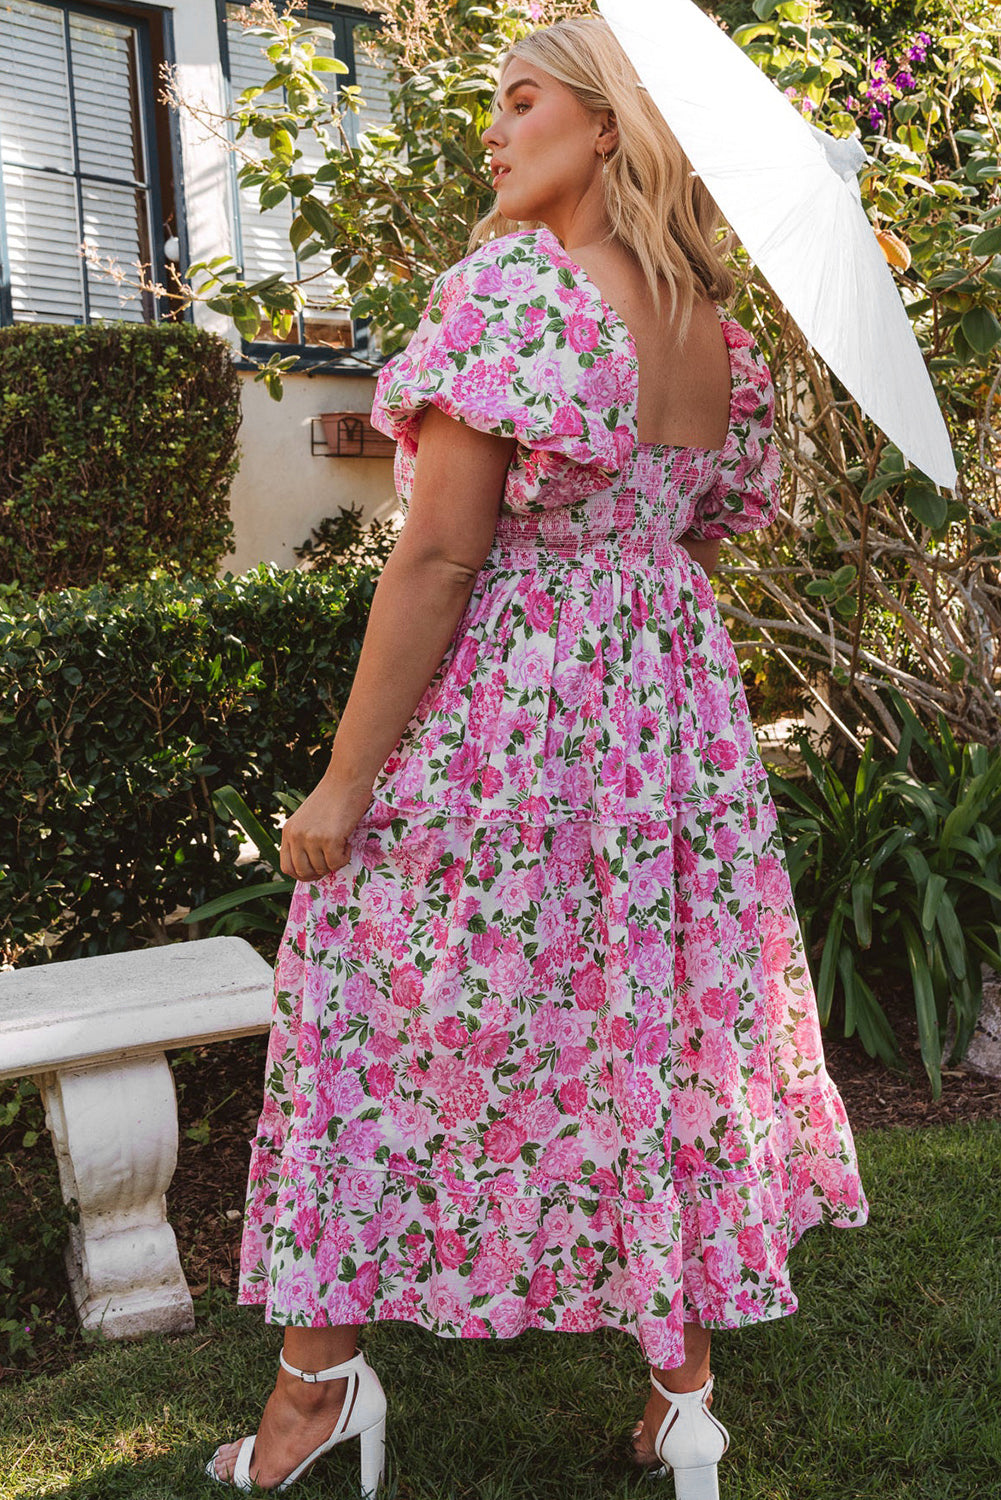 Rožnata obleka z napihnjenimi rokavi in ​​cvetličnim vzorcem velike velikosti